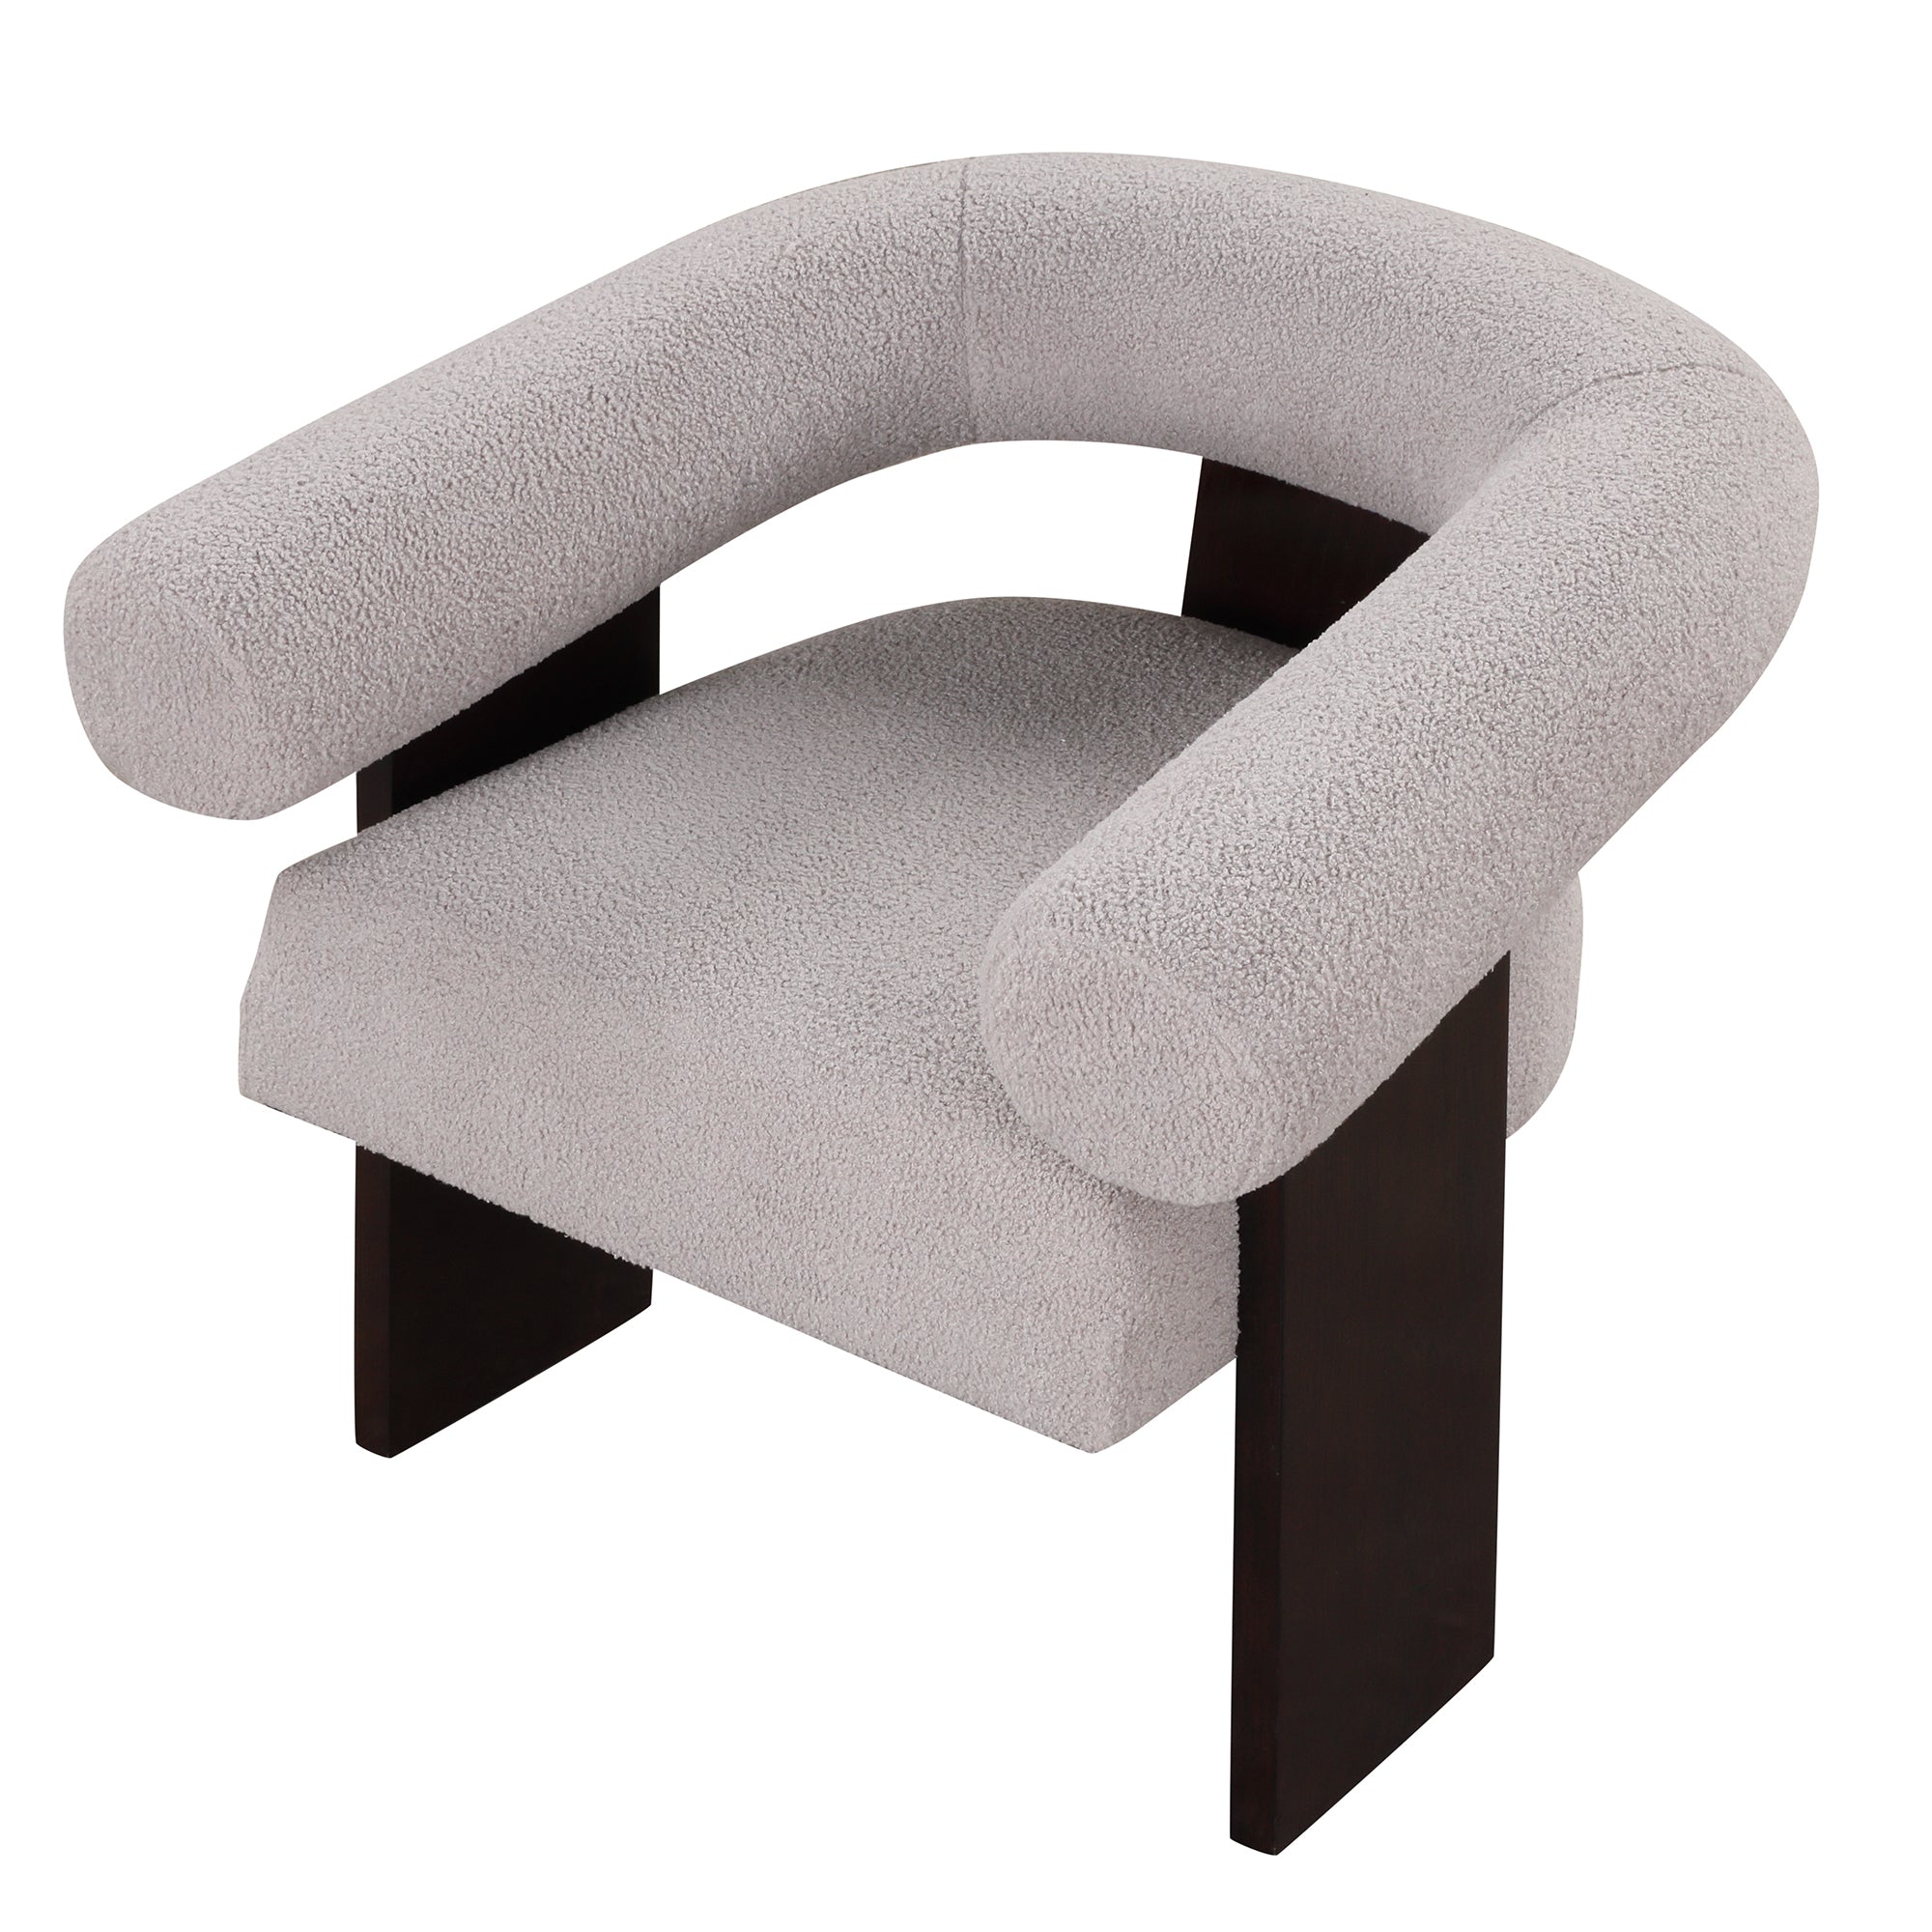 The Curved Wishbone Frame Accent Chair Teddy Velvet for Living Room - Light Gray